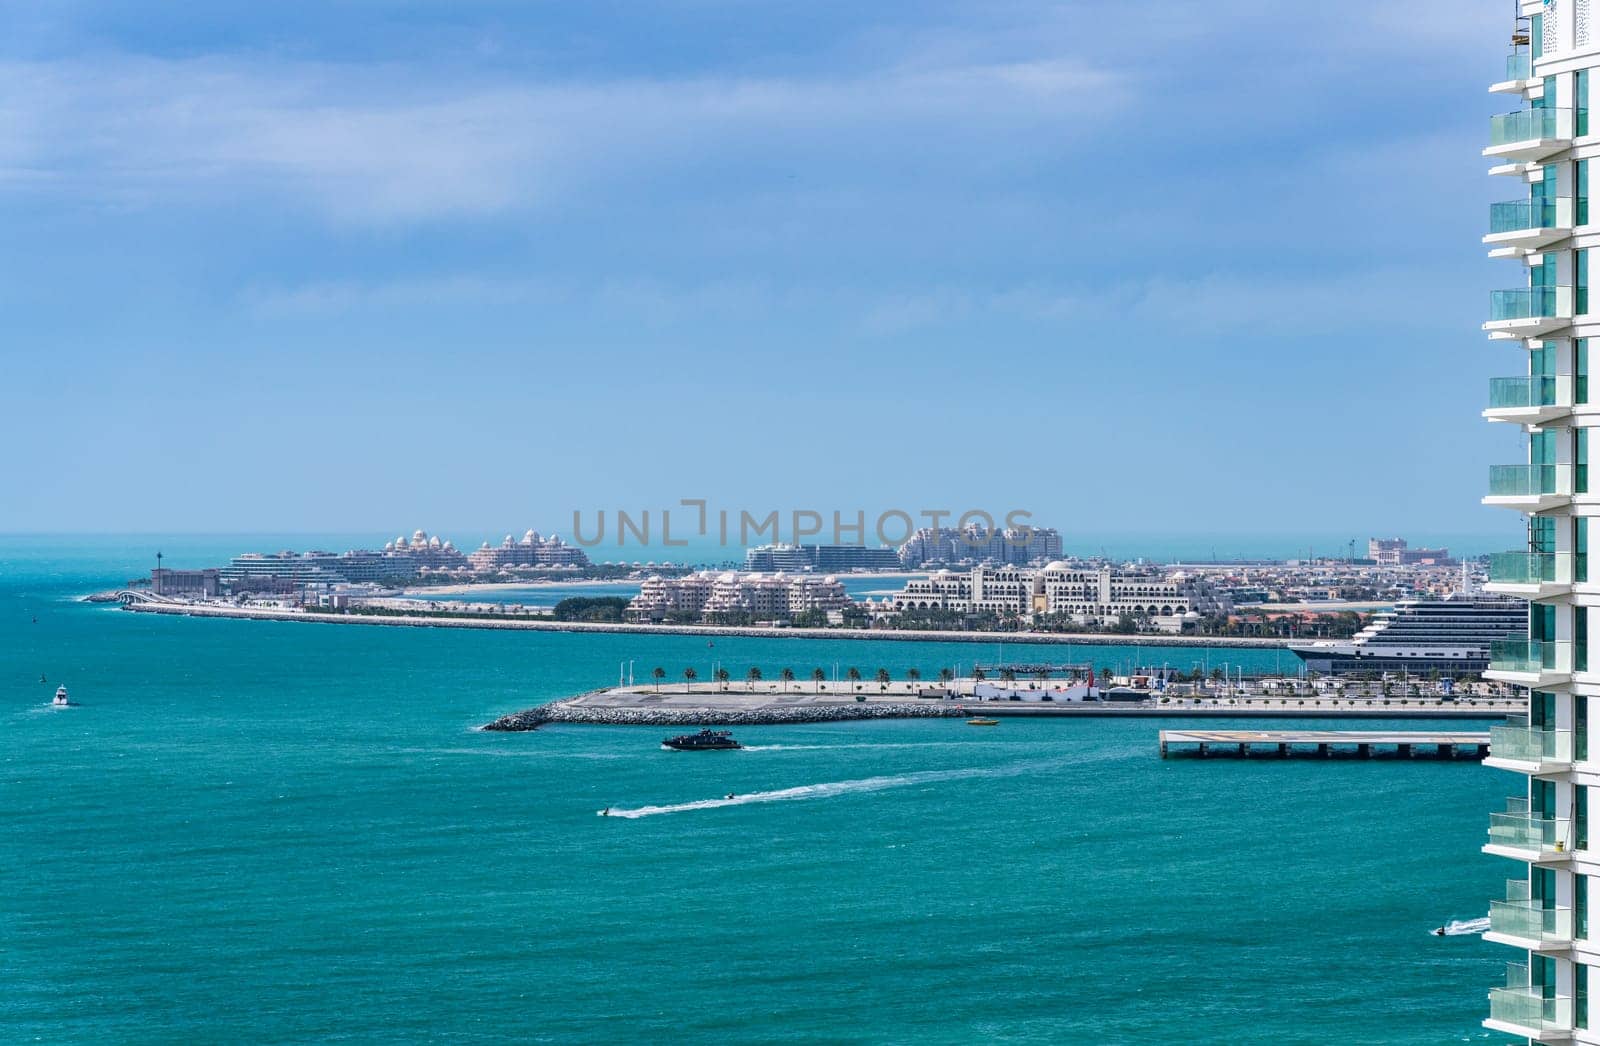 Cruise ship in port by Palm Jumeirah in Dubai UAE by steheap